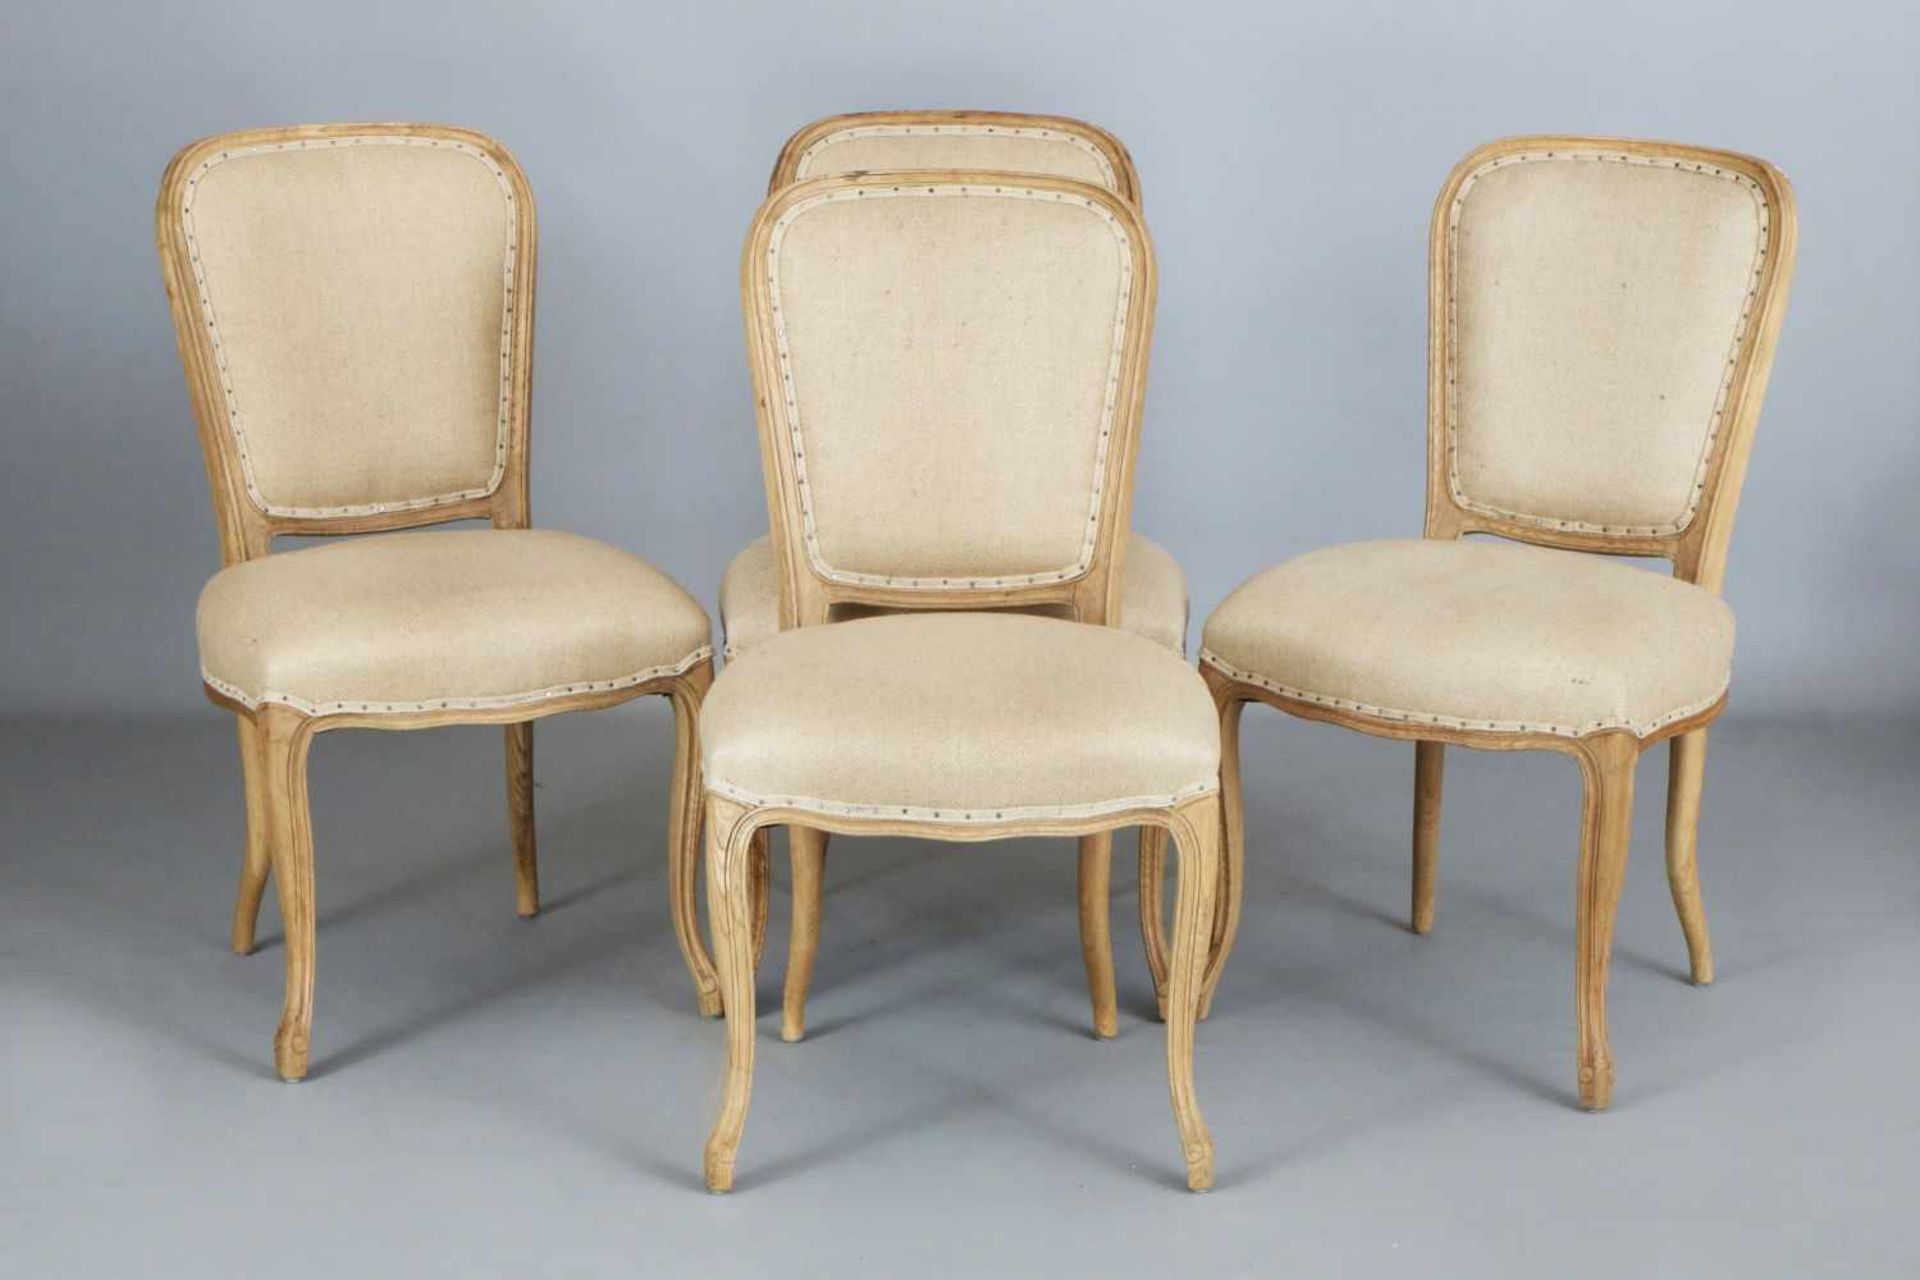 4 PONAX Stühle im Stile Louis XV.heller Eichenholzrahmen, gepolsterter, trapezförmiger Rücken und